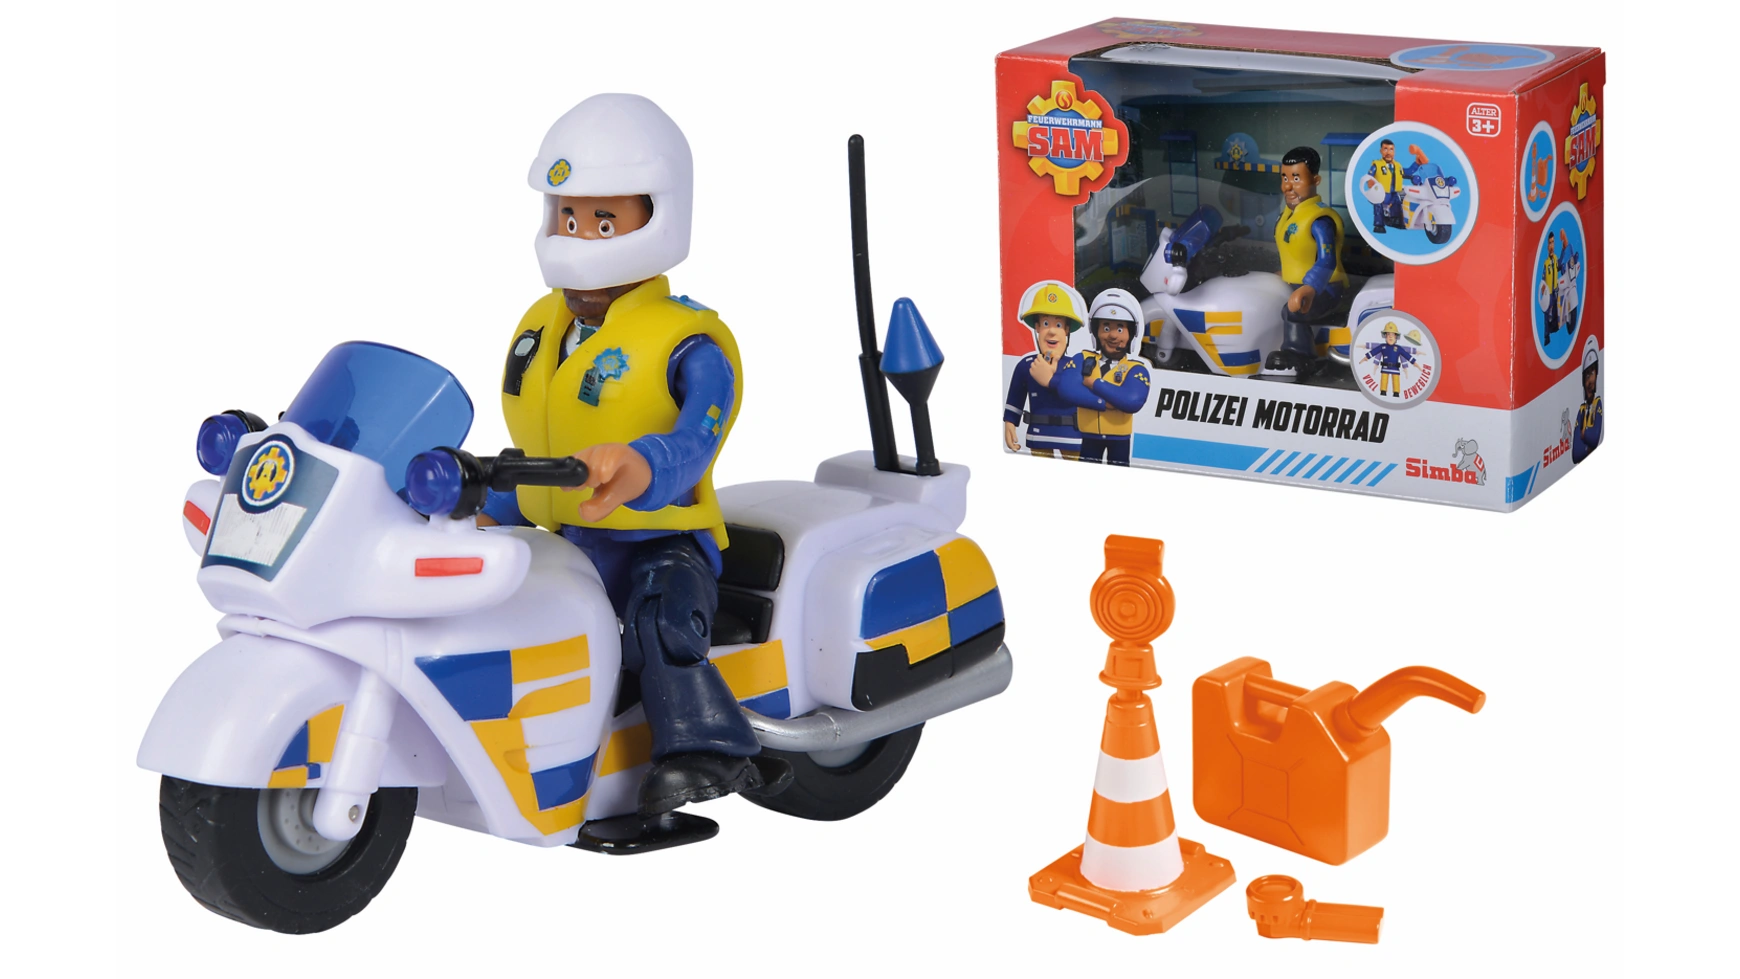 цена Пожарный сэм полицейский мотоцикл, включая фигурку полицейского малкома и аксессуары Simba